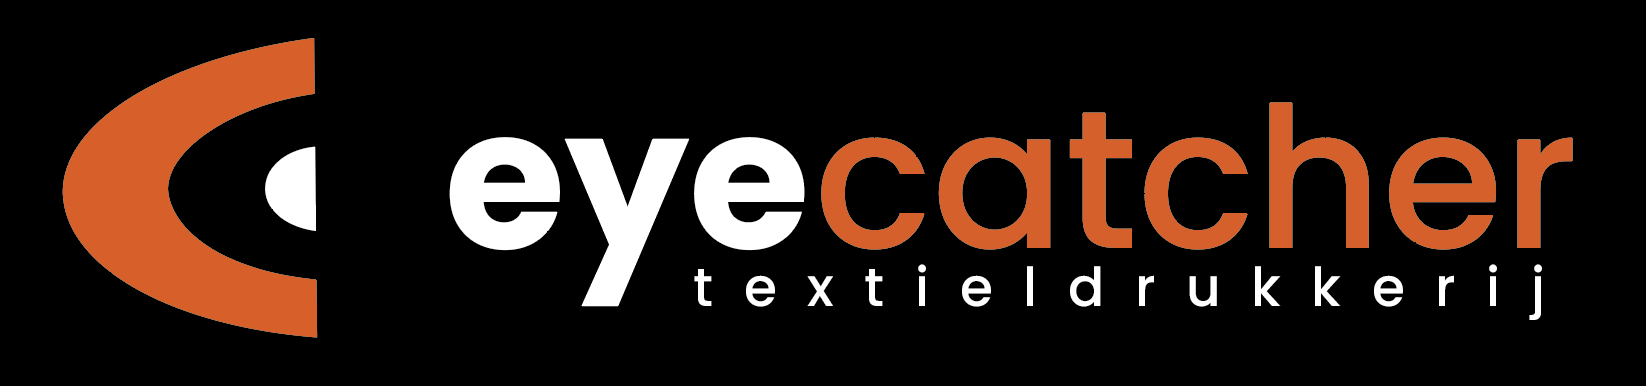 Eyecatcher Textieldrukkerij